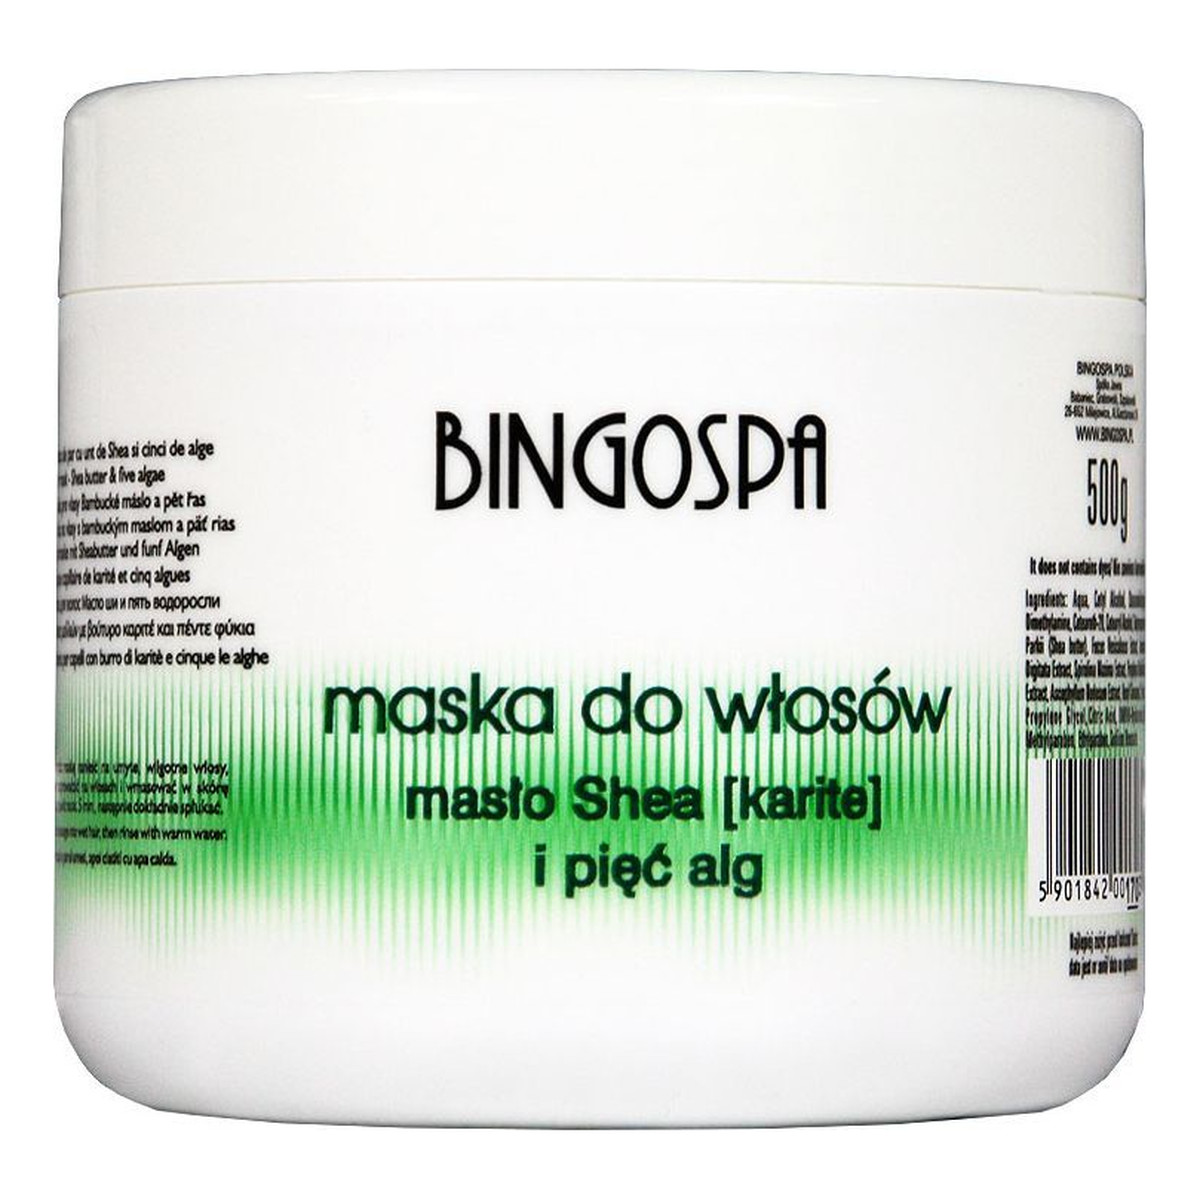 BingoSpa Maska do włosów z masłem shea i pięcioma algami 500g